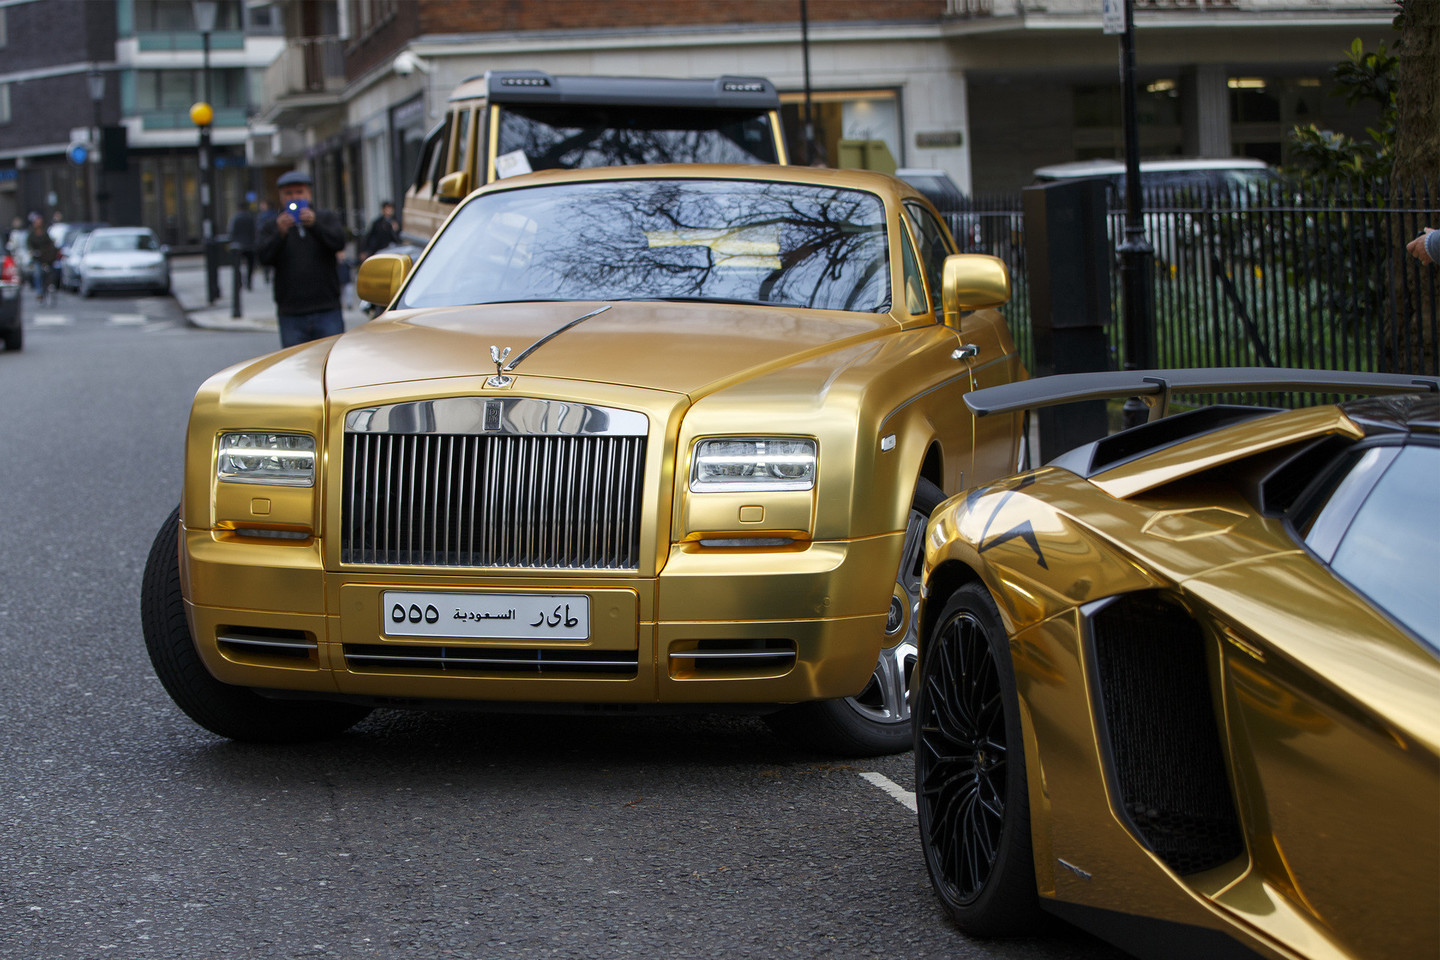 Auksiniai Saudo Arabijos milijardieriaus automobiliai nustebino net visko mačiusius londoniečius.<br>VidaPress nuotr.